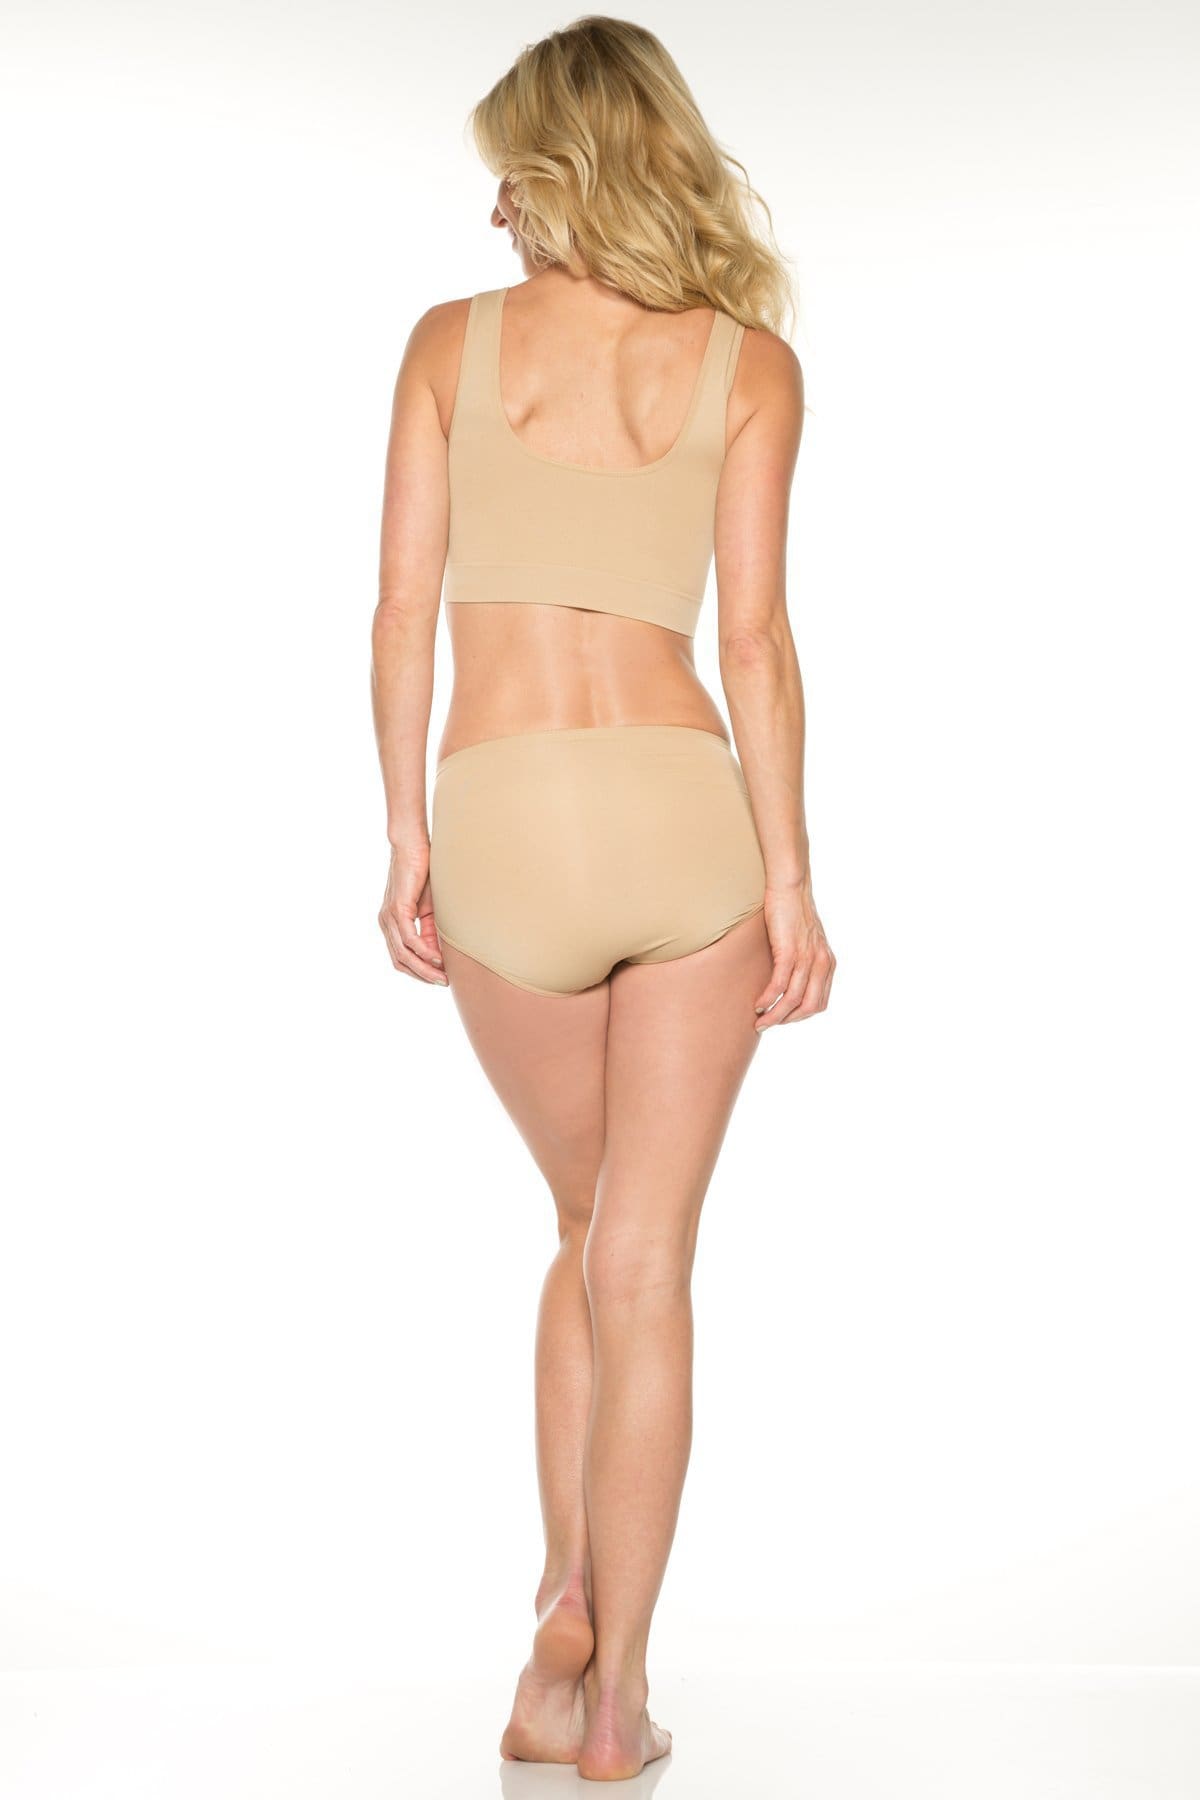 Rhonda Shear Lace Underwear briefs Tan size XL - beyond exchange